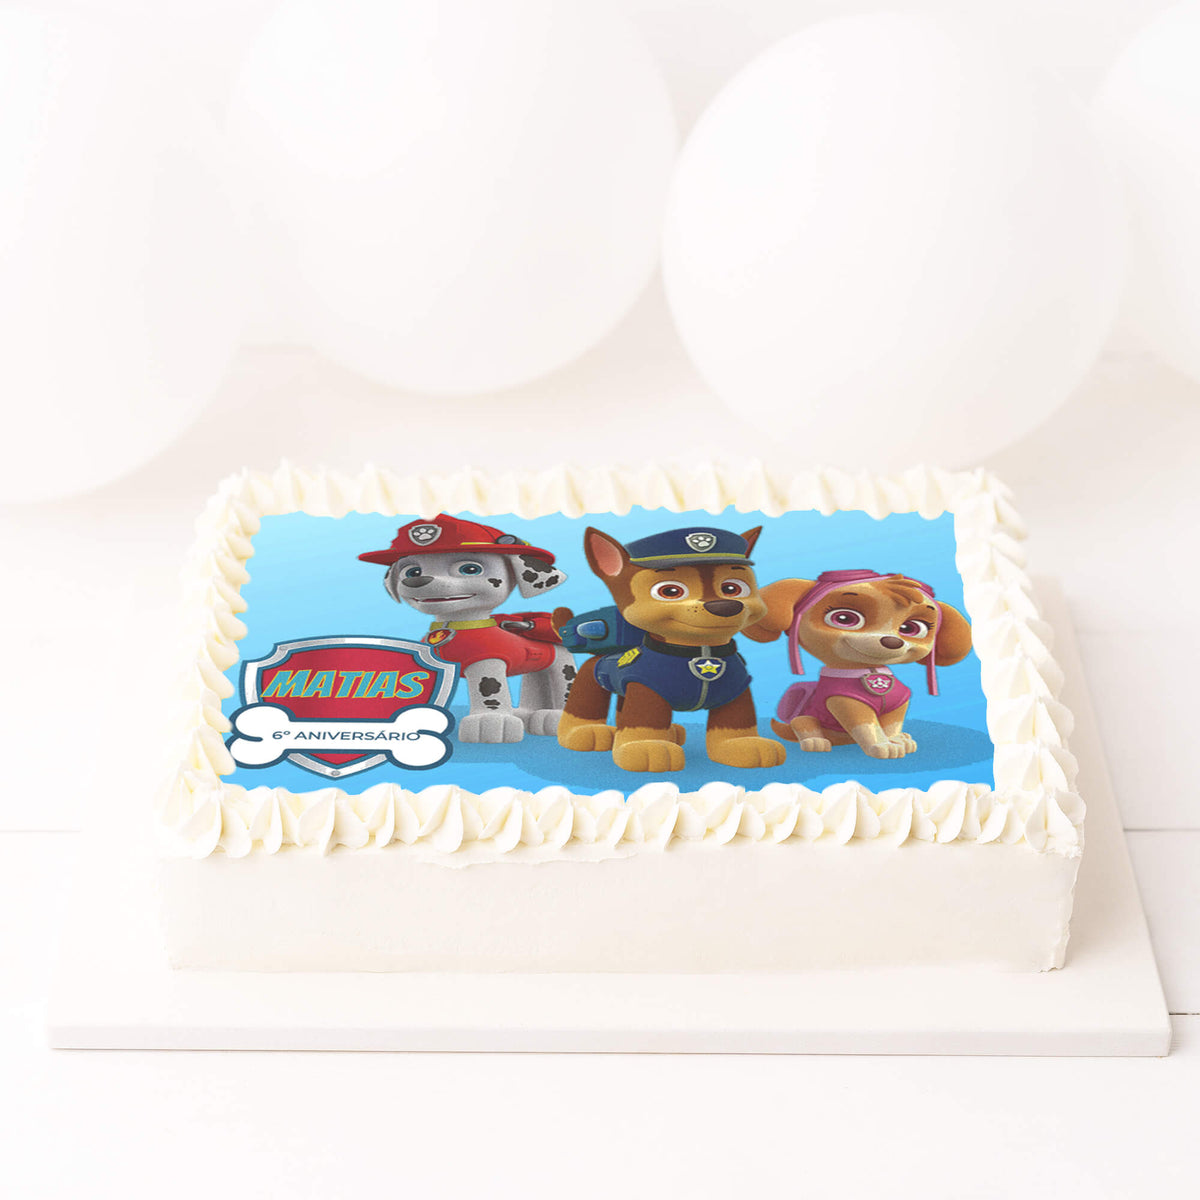 8 opções deliciosas de bolo de aniversário para adultos e crianças